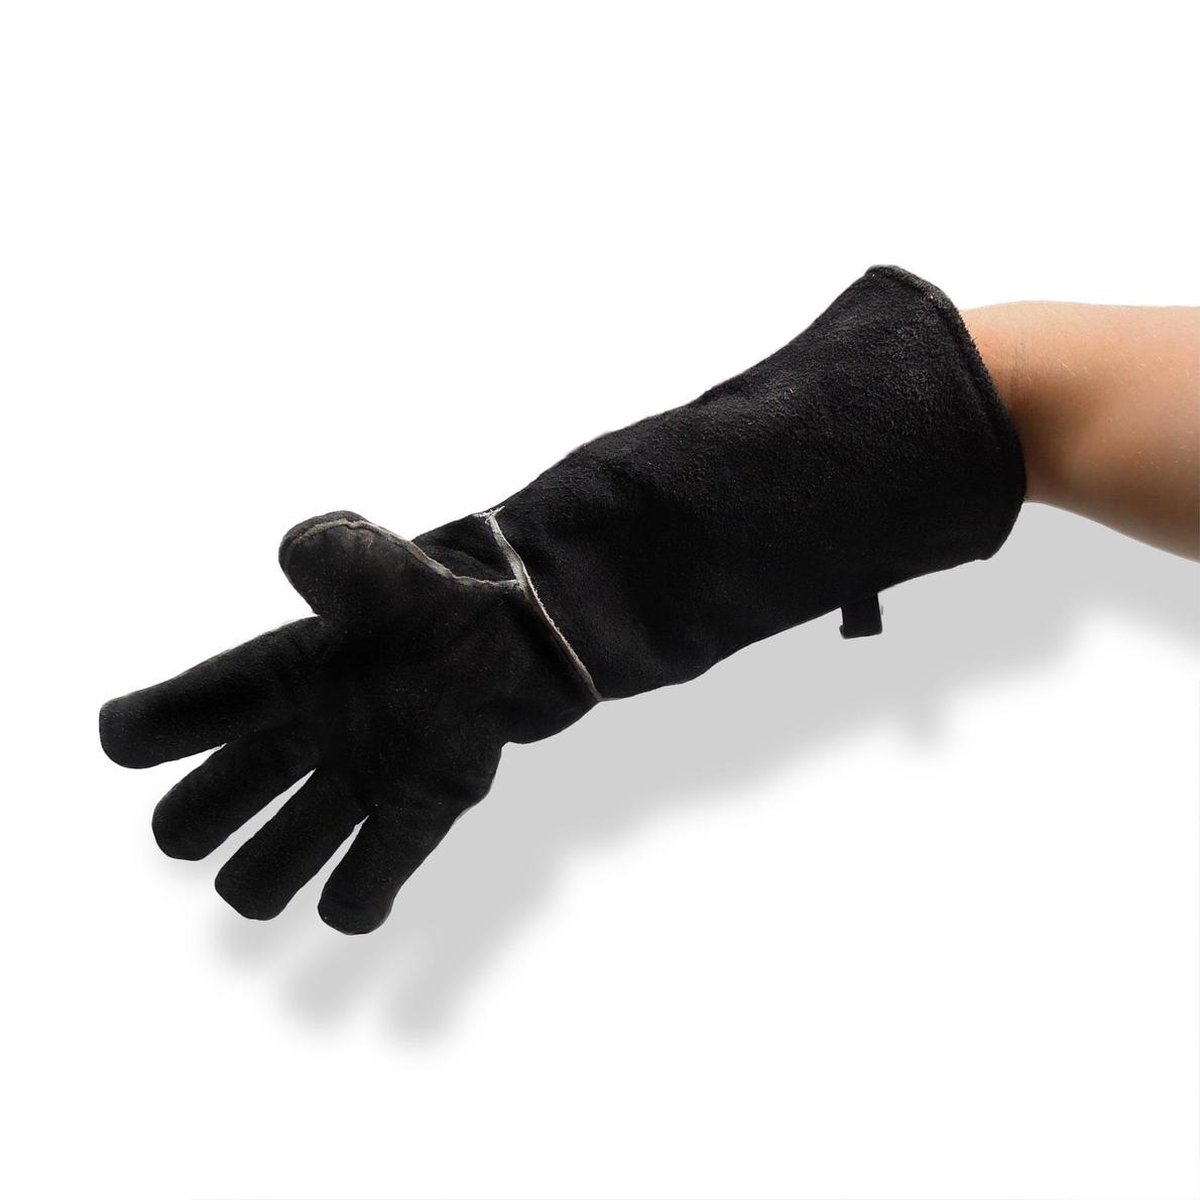 Hittebestendige handschoenen - 2 stuks - Extra lang | bol.com